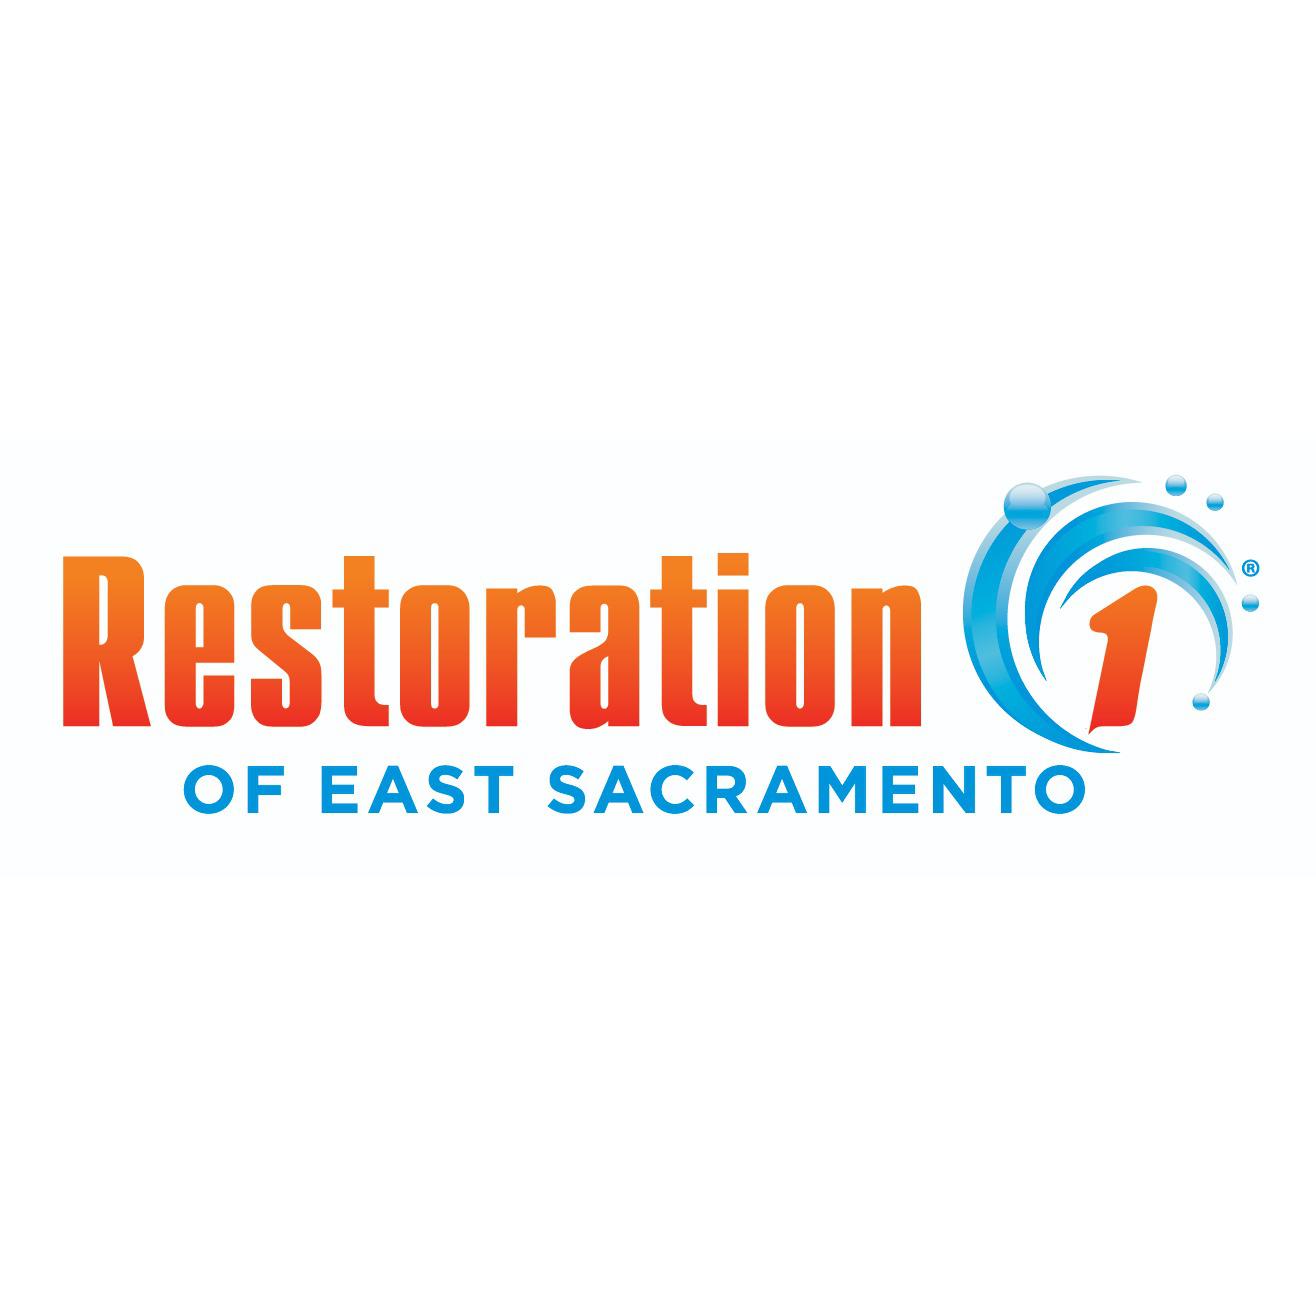 Restoration 1 of East Sacramento